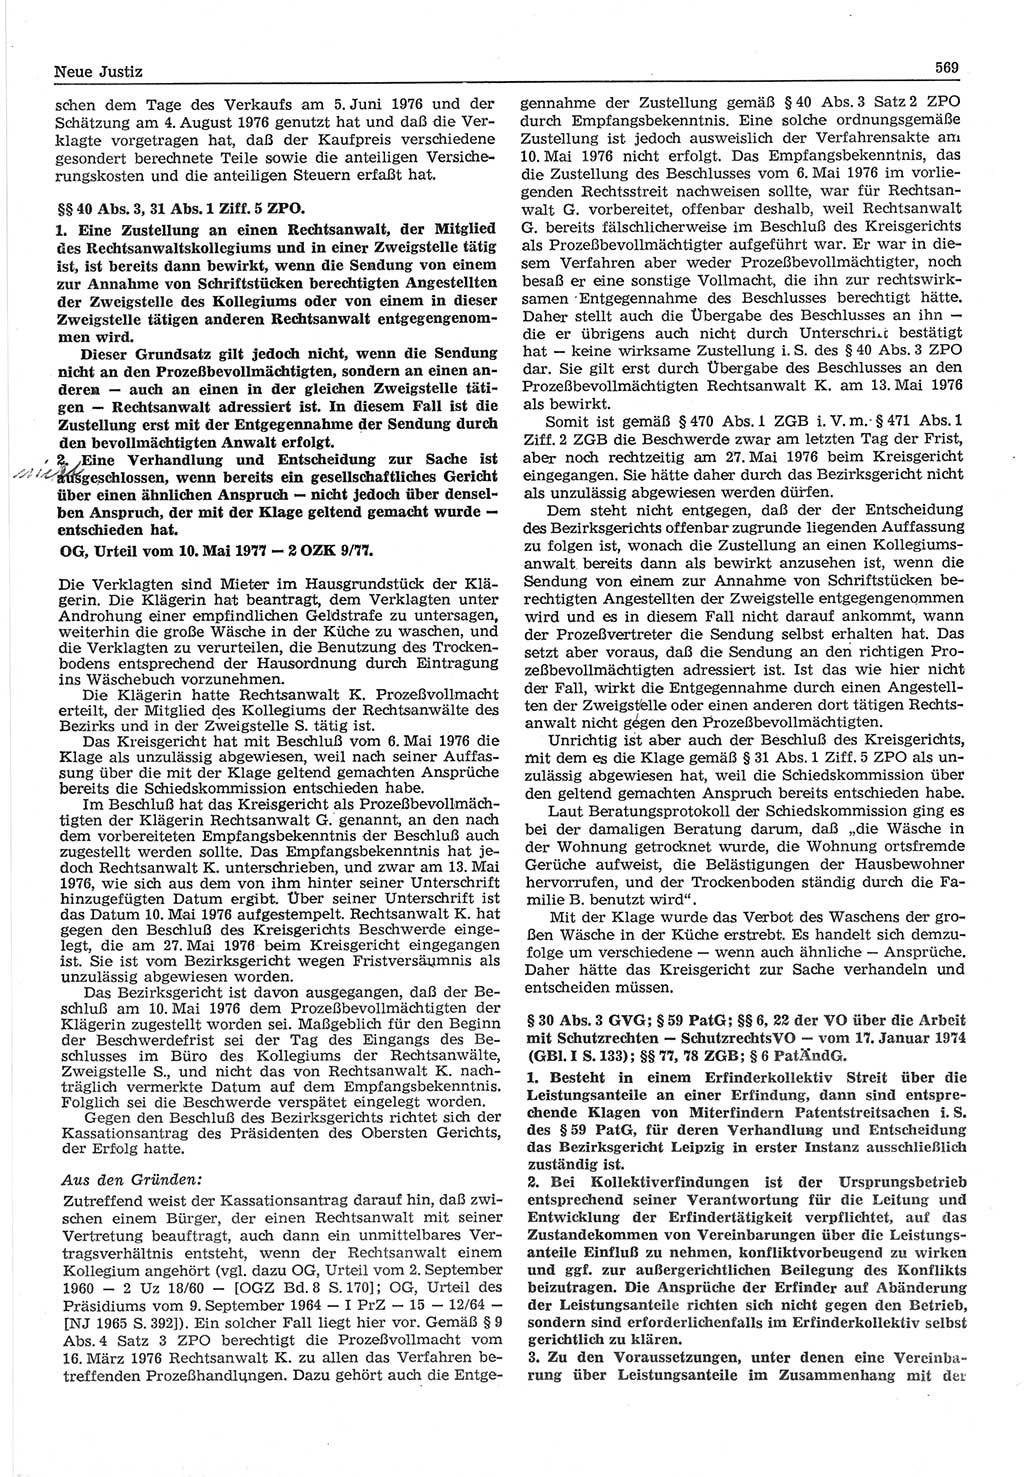 Neue Justiz (NJ), Zeitschrift für Recht und Rechtswissenschaft-Zeitschrift, sozialistisches Recht und Gesetzlichkeit, 31. Jahrgang 1977, Seite 569 (NJ DDR 1977, S. 569)